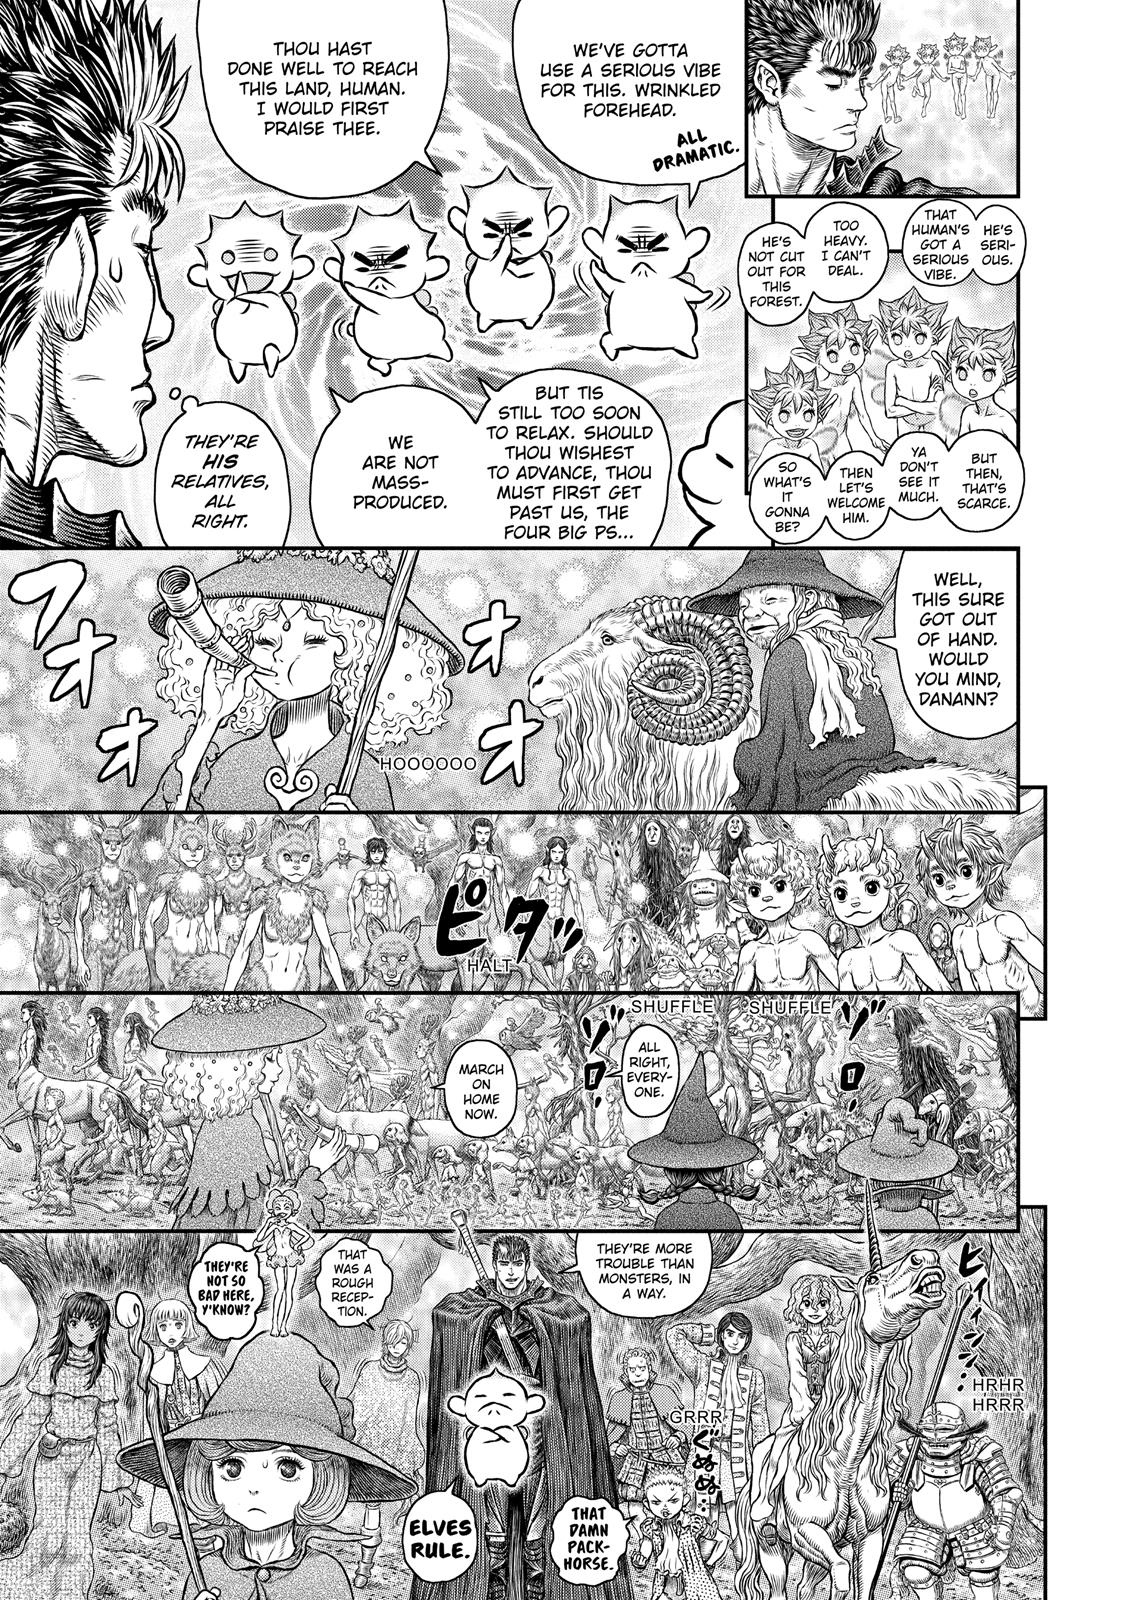 Berserk Manga Chapter 346 image 09